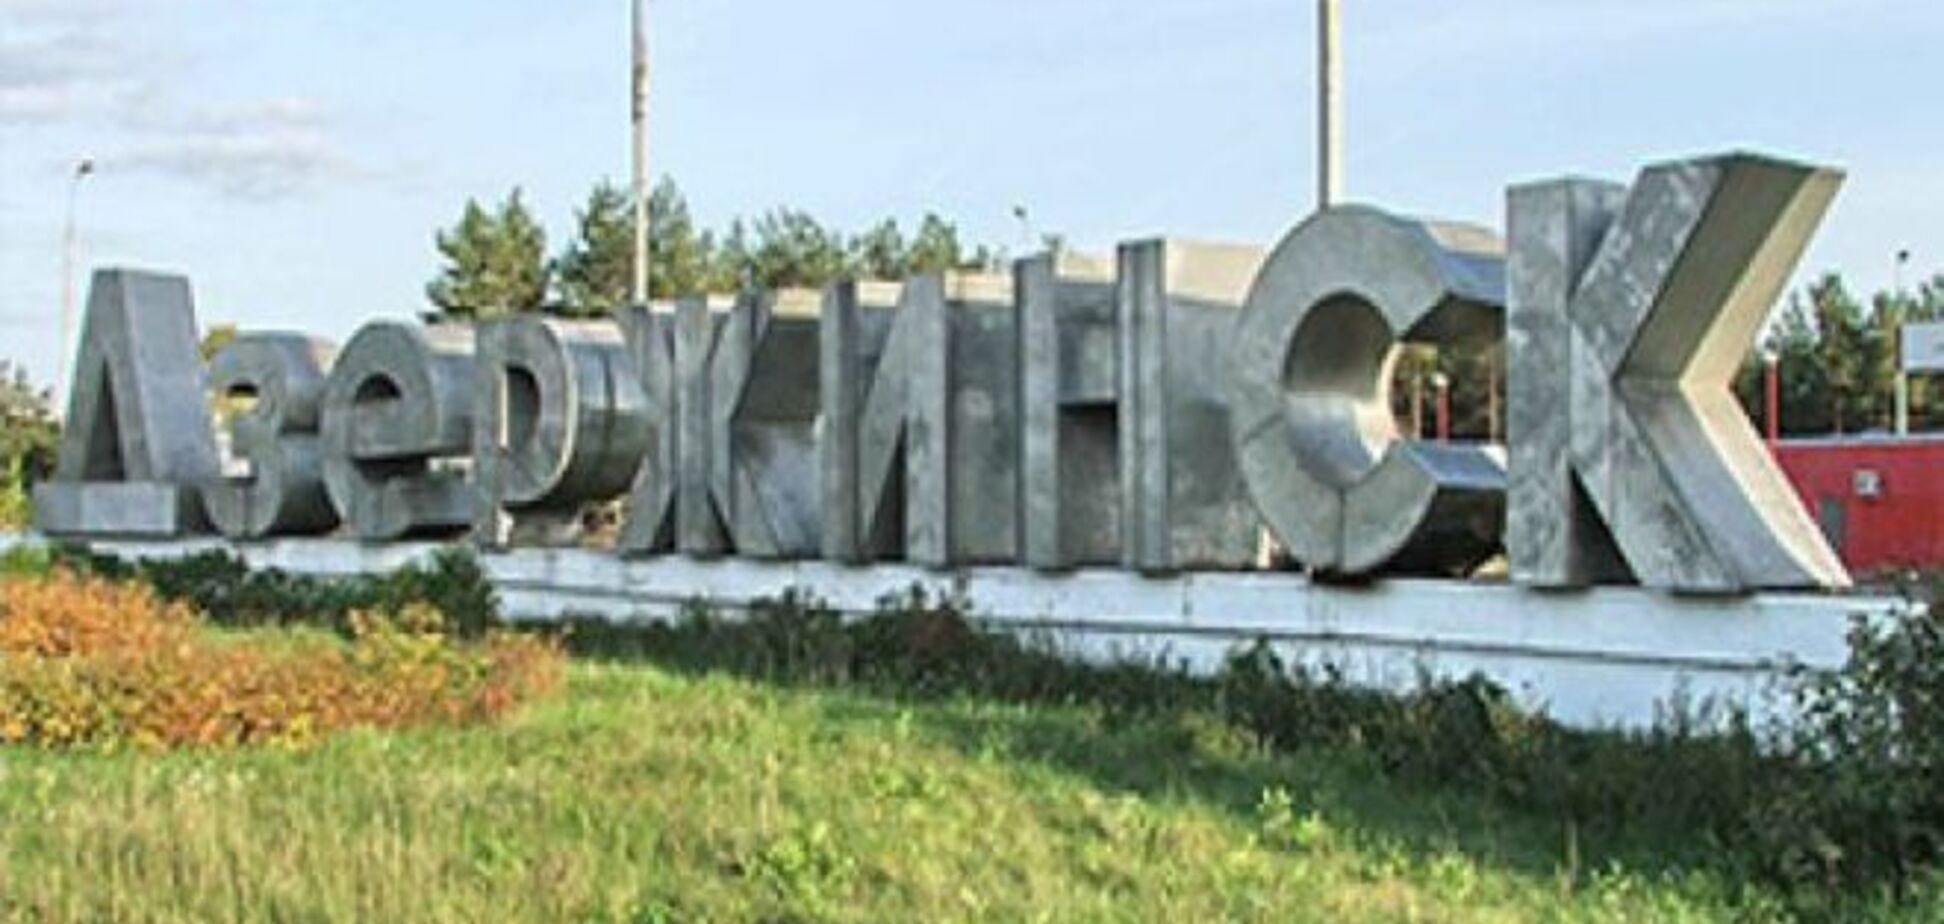 Жебривский предложил 10 тыс. за лучшее название для Дзержинска